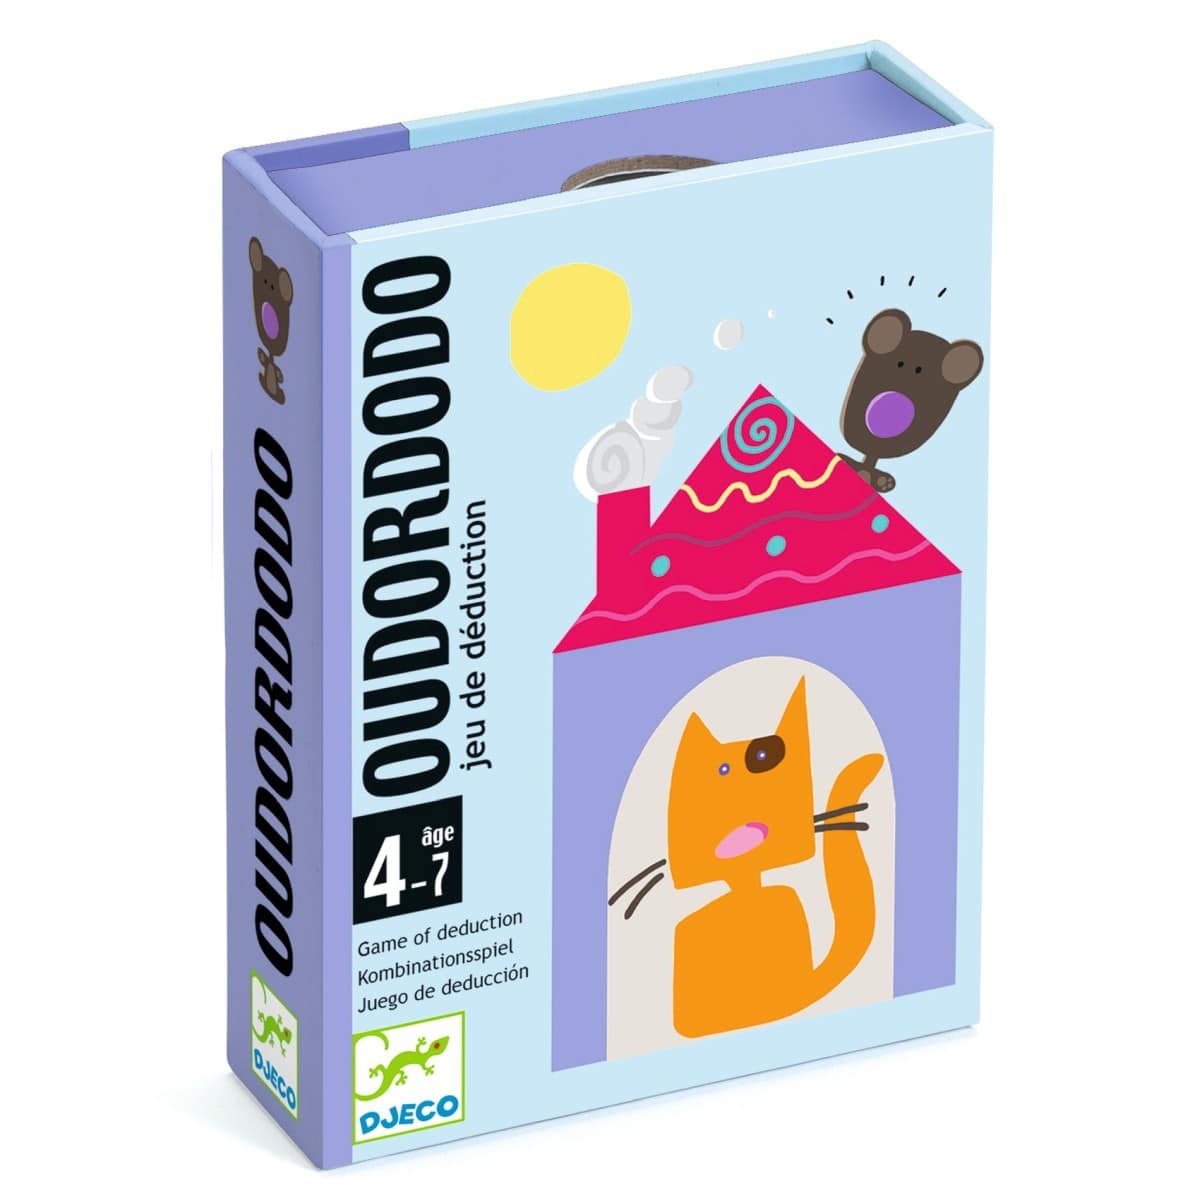 DJ05106 Djeco Card Game of Deduction - Oudordodo